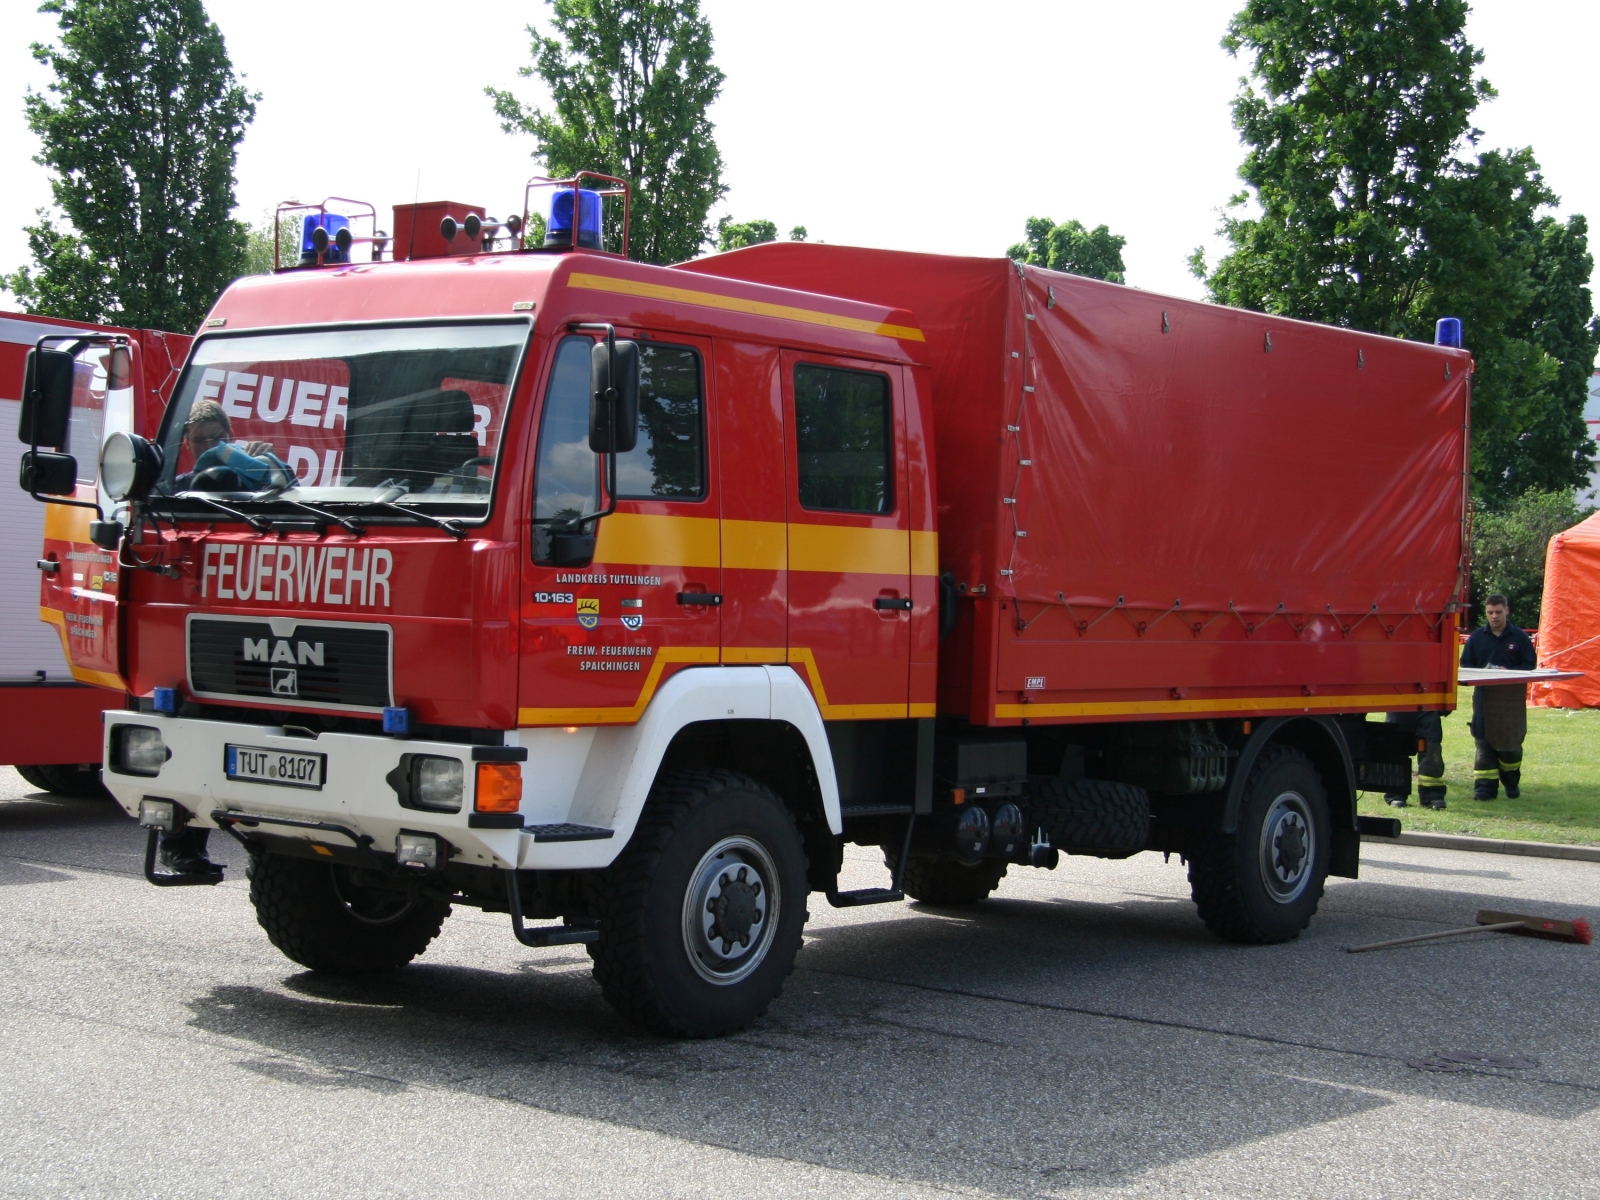 MAN 10.163 Feuerwehr mit Aufbau von Empl